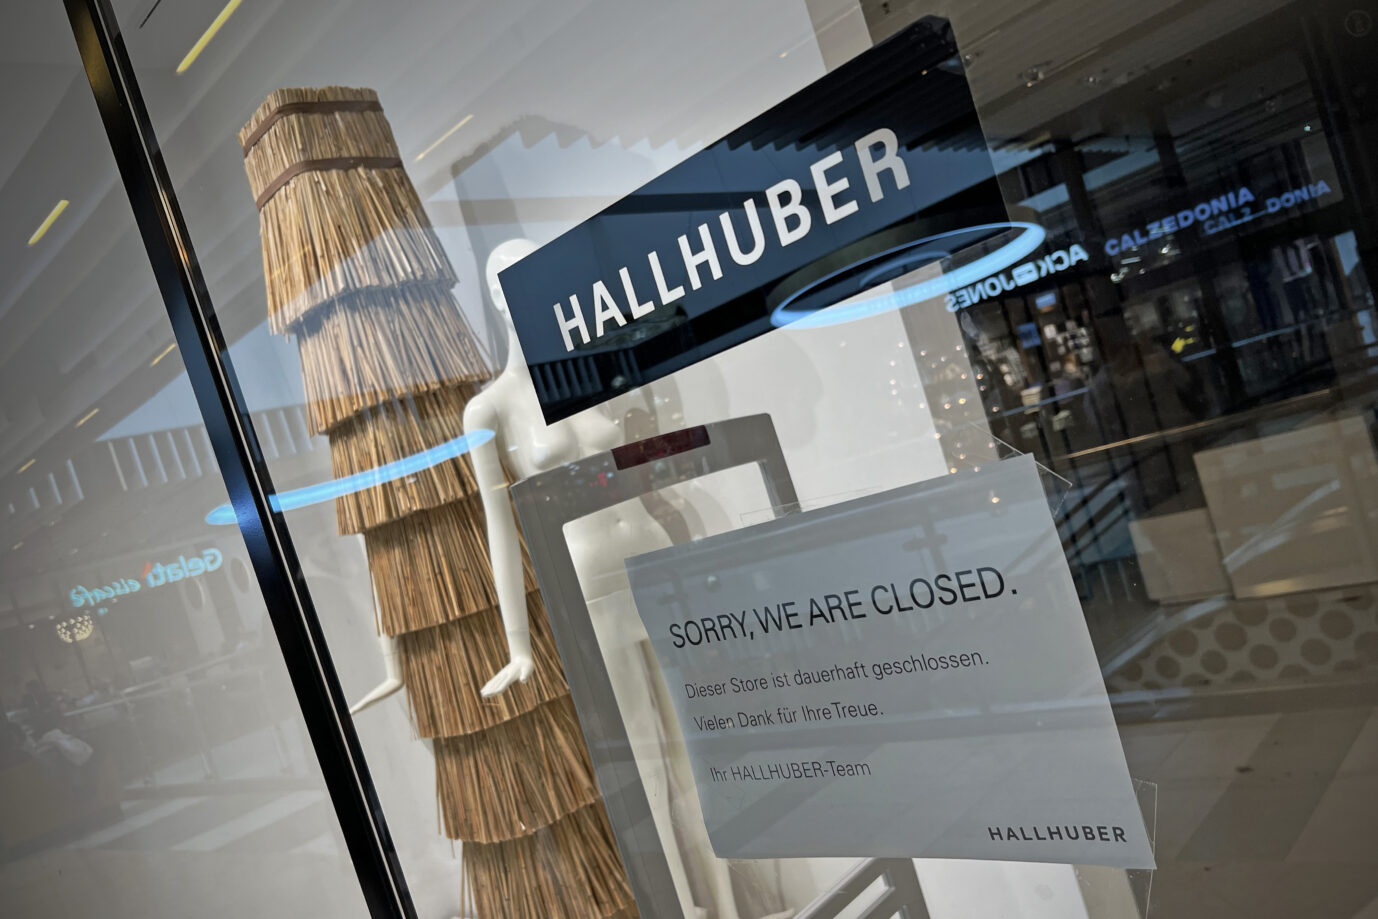 Auf dem Foto befindet sich ein Laden von "Hallhuber", einer Marke, die vor einigen Tagen Insolvenz vermelden musste. (Themenbild/Symbolbild)